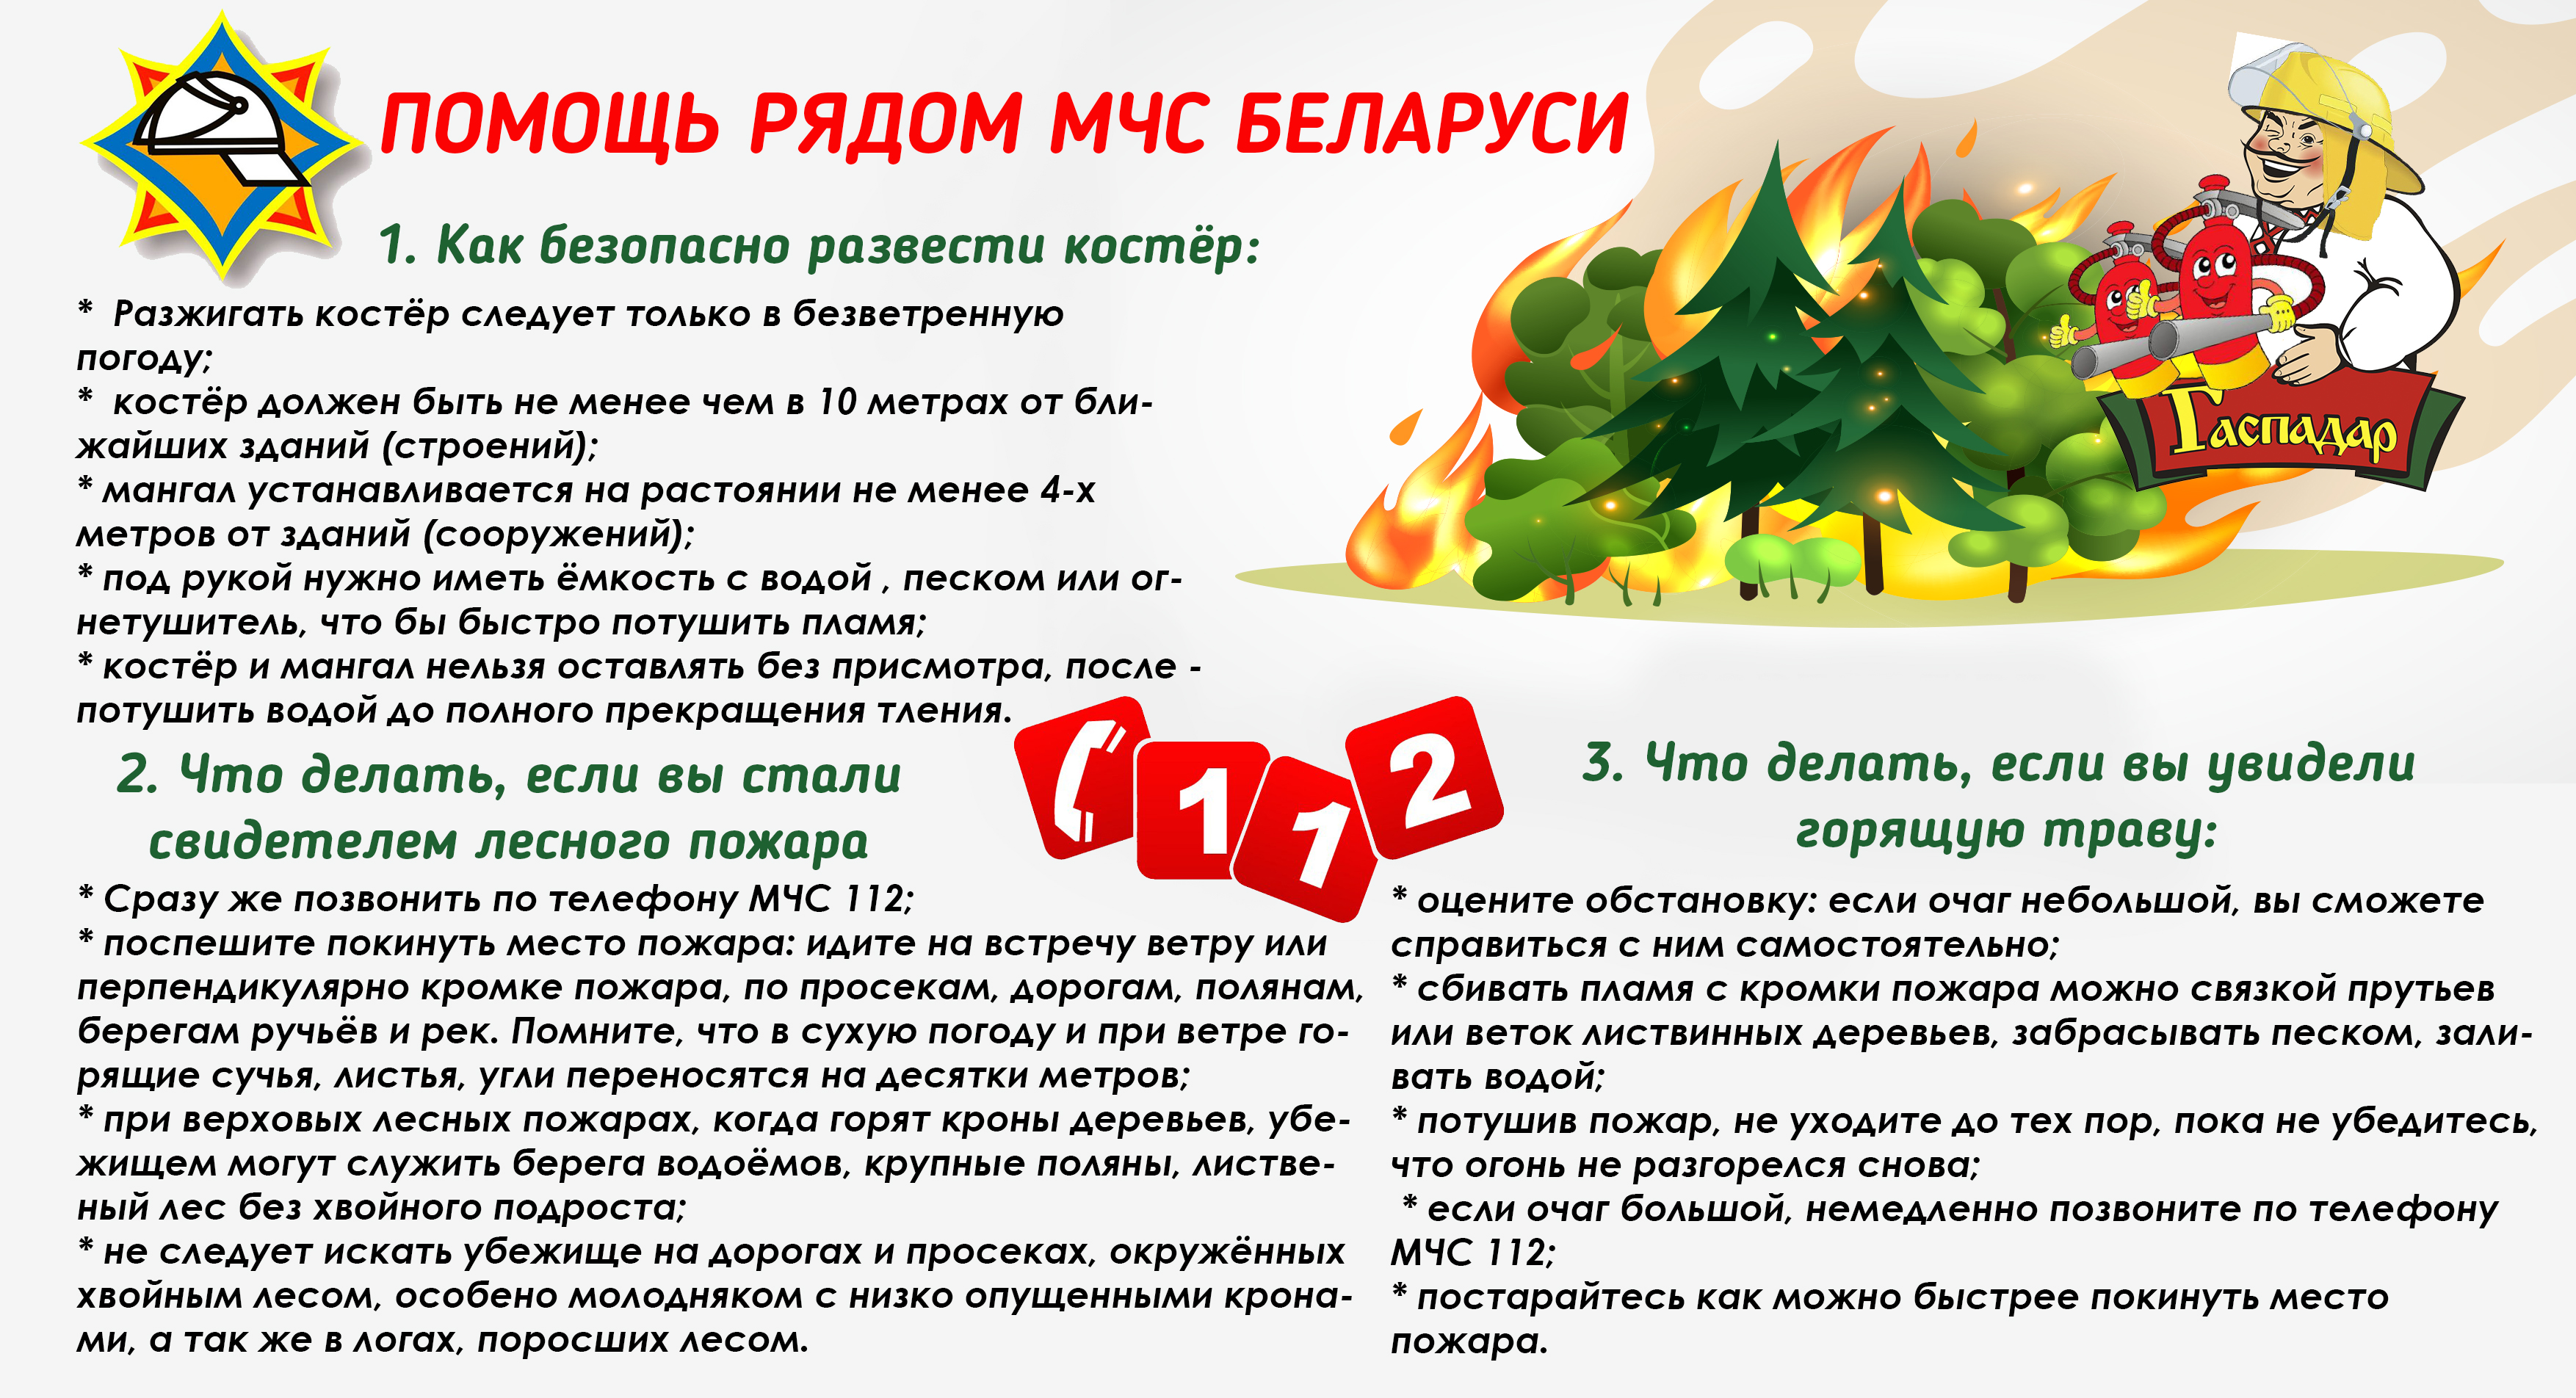 Помощь рядом: МЧС Беларуси предупреждает о пожароопасной обстановке в регионе